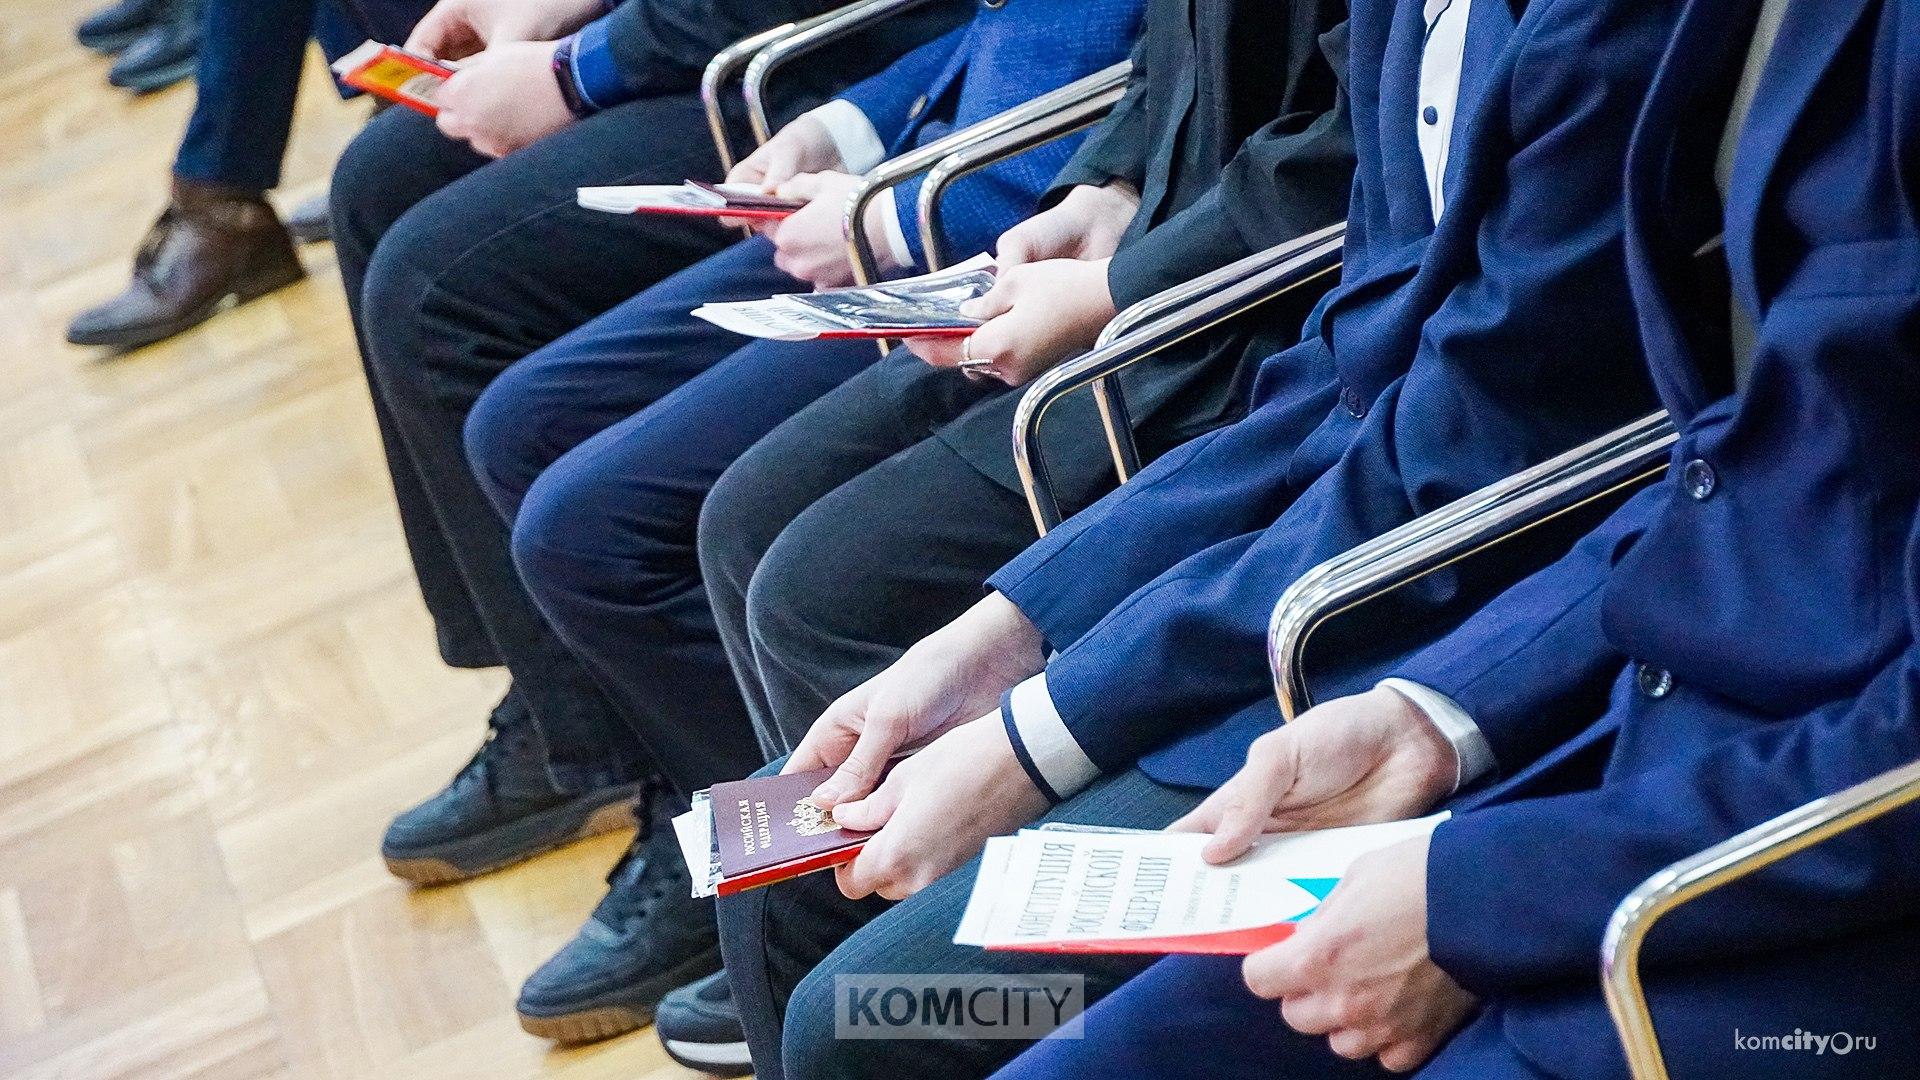 56 юных комсомольчан получили паспорта в День Конституции